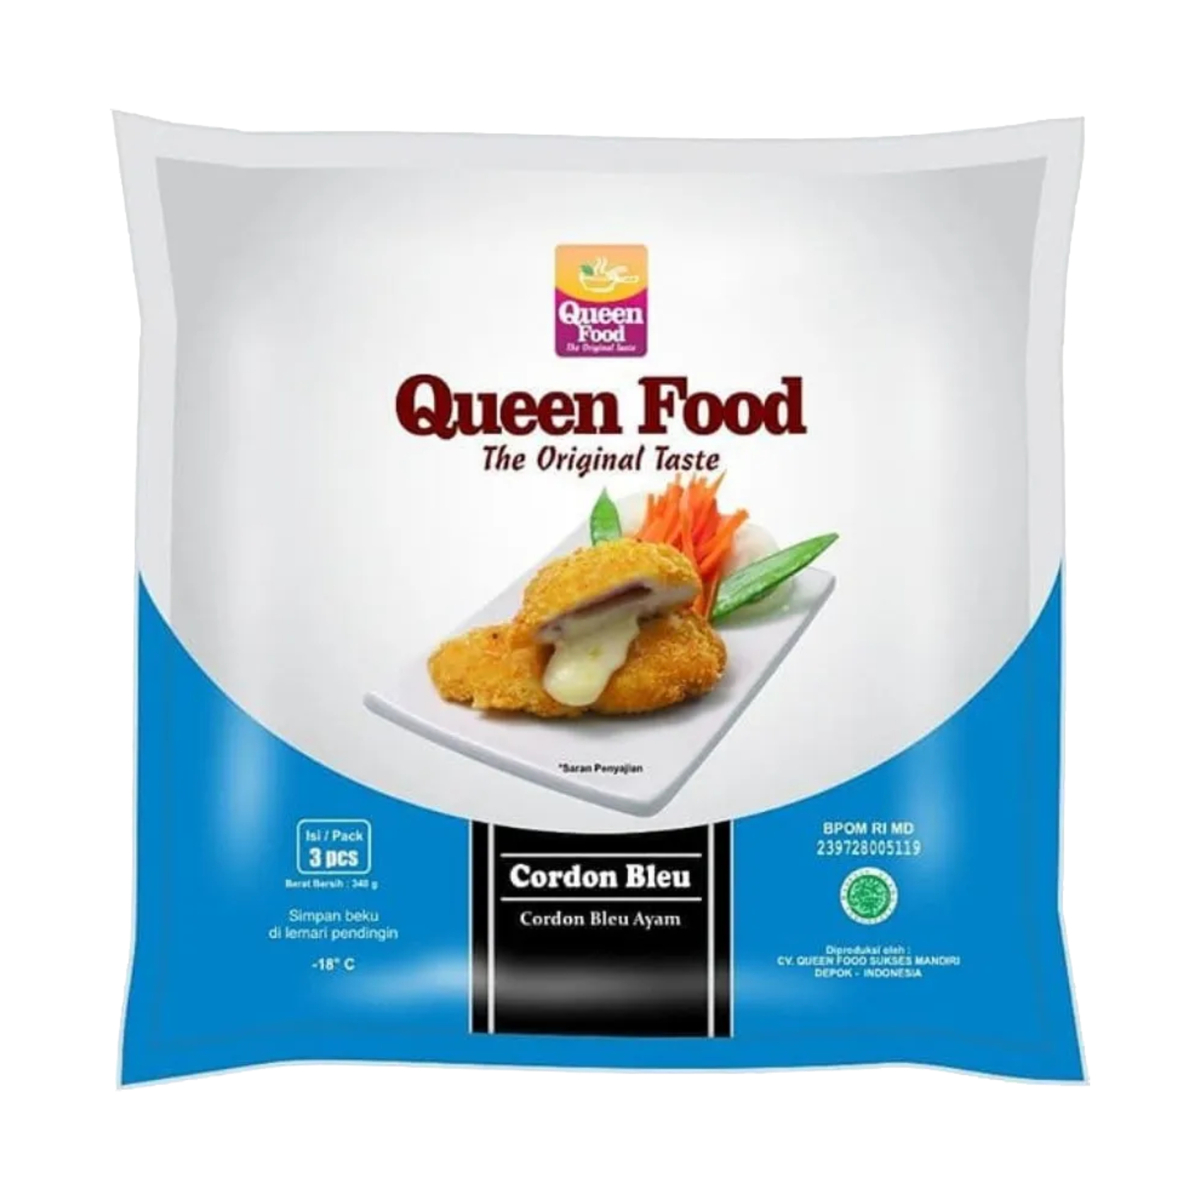 Queen Food Chicken Cordon Bleu 340g